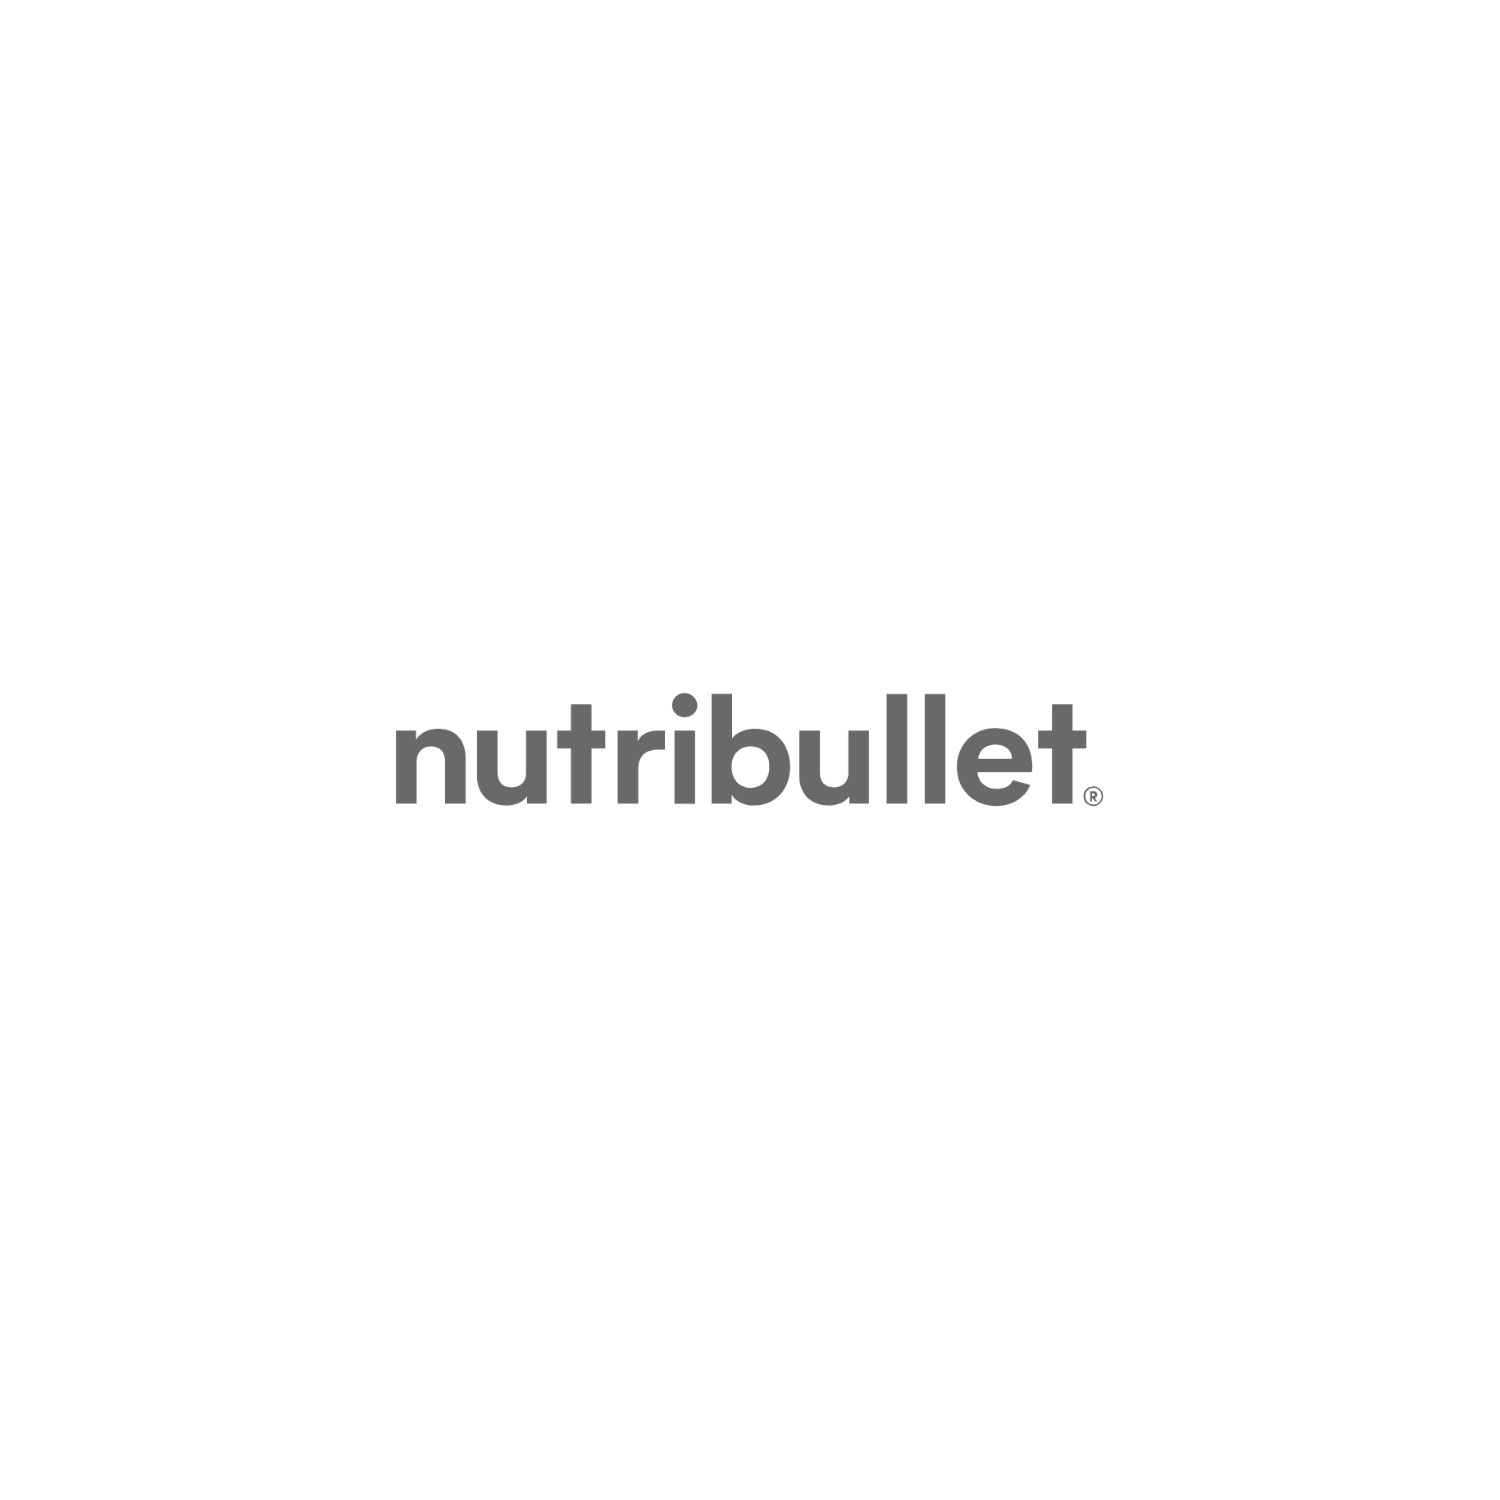 nutribullet-logo